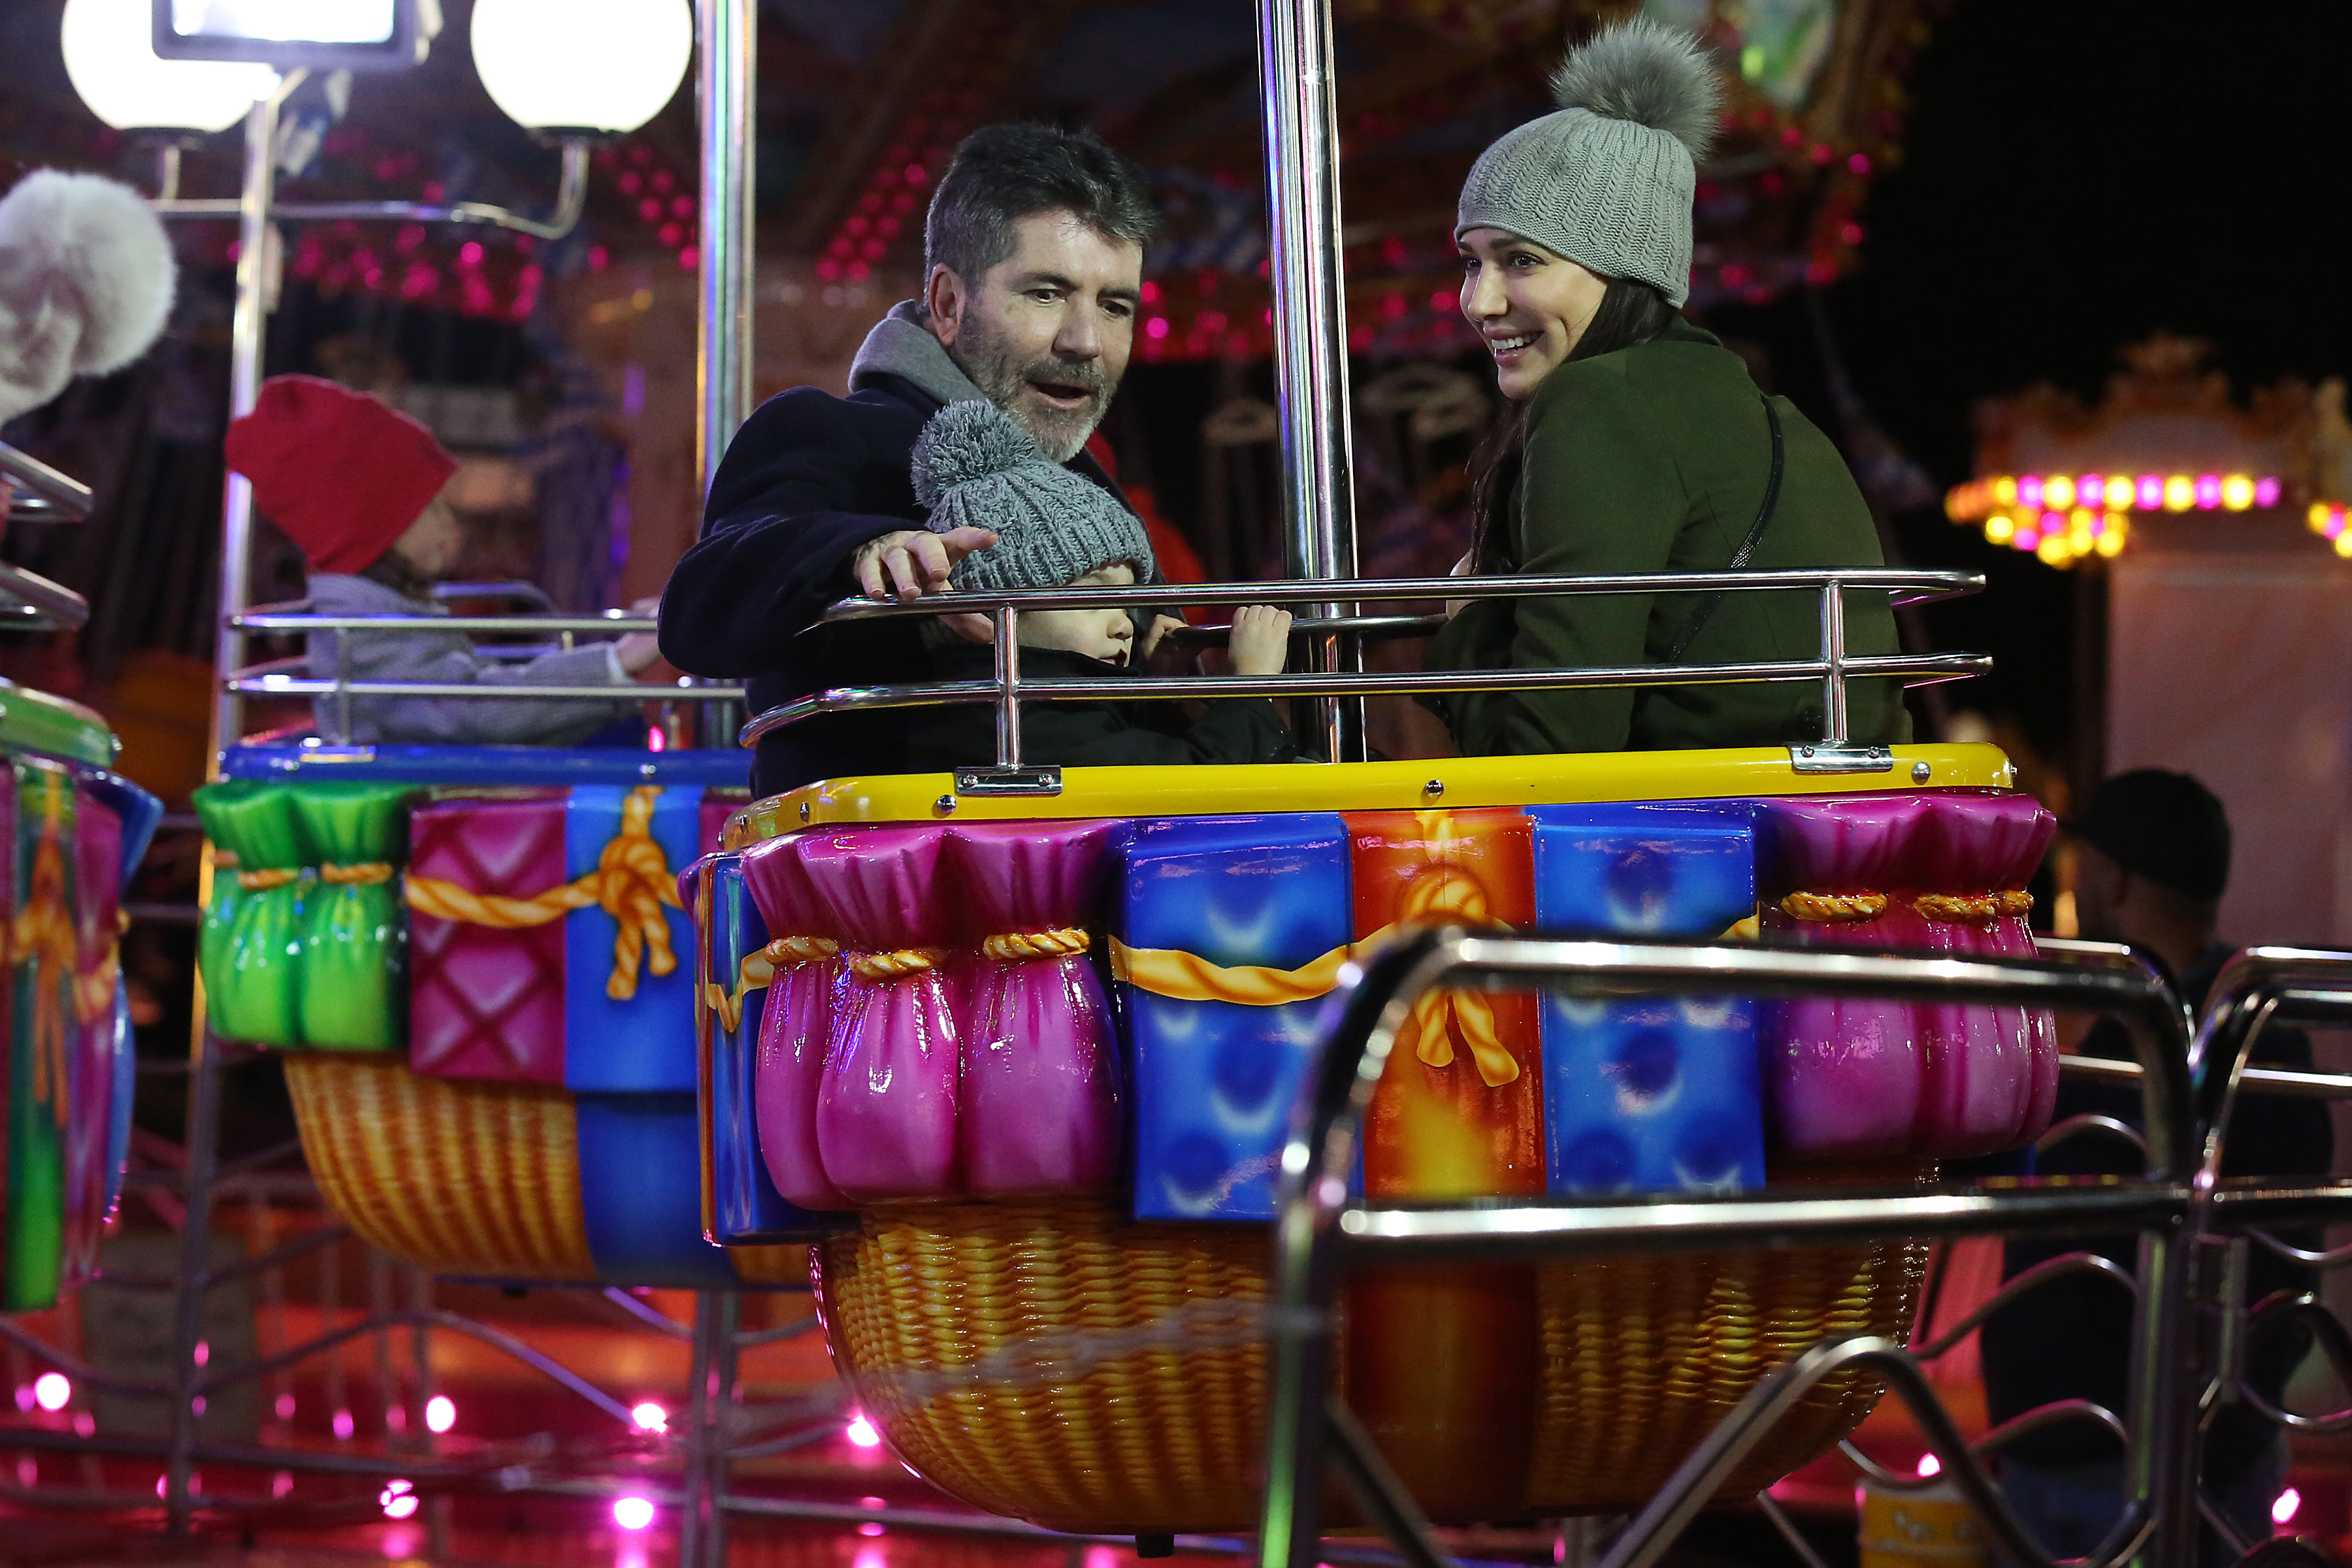 Simon et Eric Cowell et Lauren Silverman à Hyde Park Winter Wonderland en 2016 à Londres | Source : Getty Images